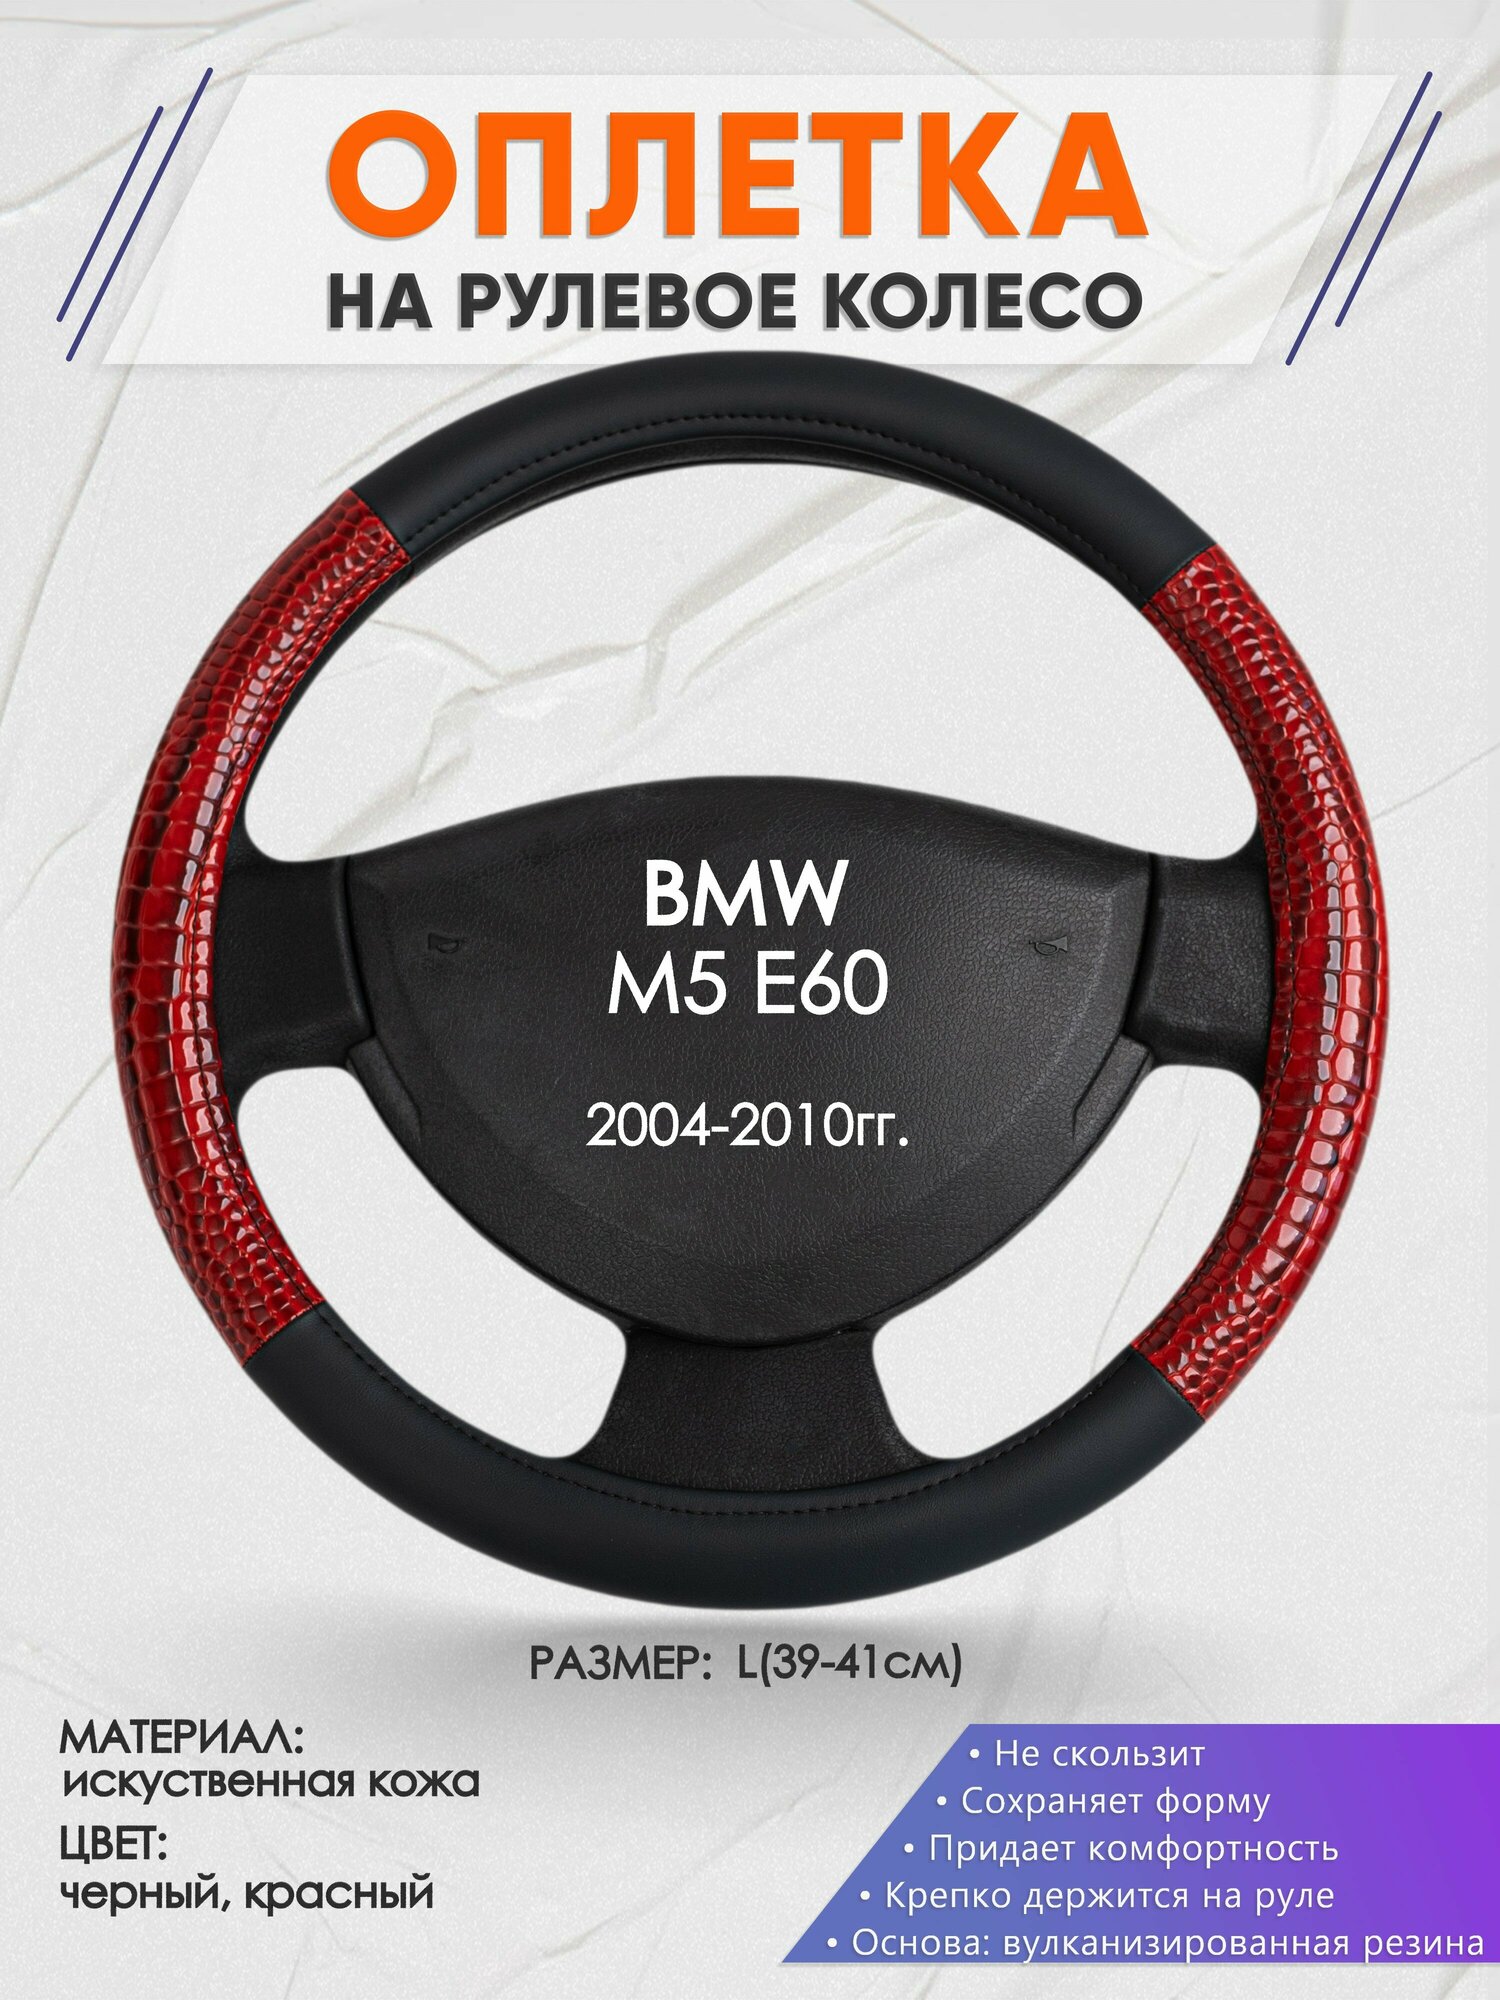 Оплетка на руль для BMW M5 E60(БМВ м5 е60) 2004-2010, L(39-41см), Искусственная кожа 16